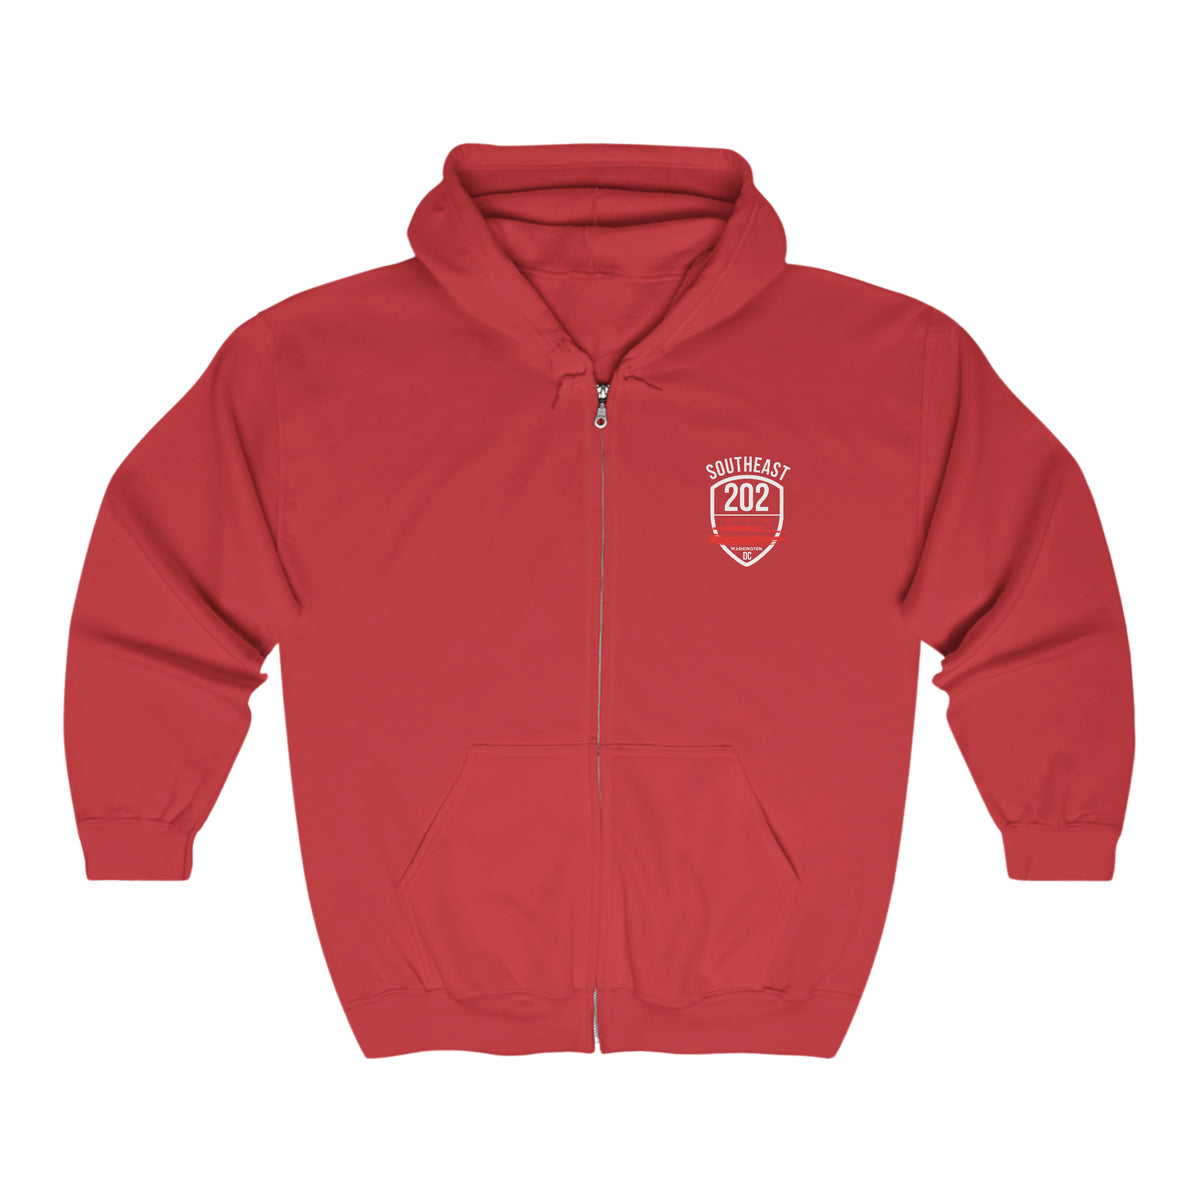 SOUTHEAST / WARD 7 - Unisex Heavy Blend™ Full Zip Hooded Sweatshirt